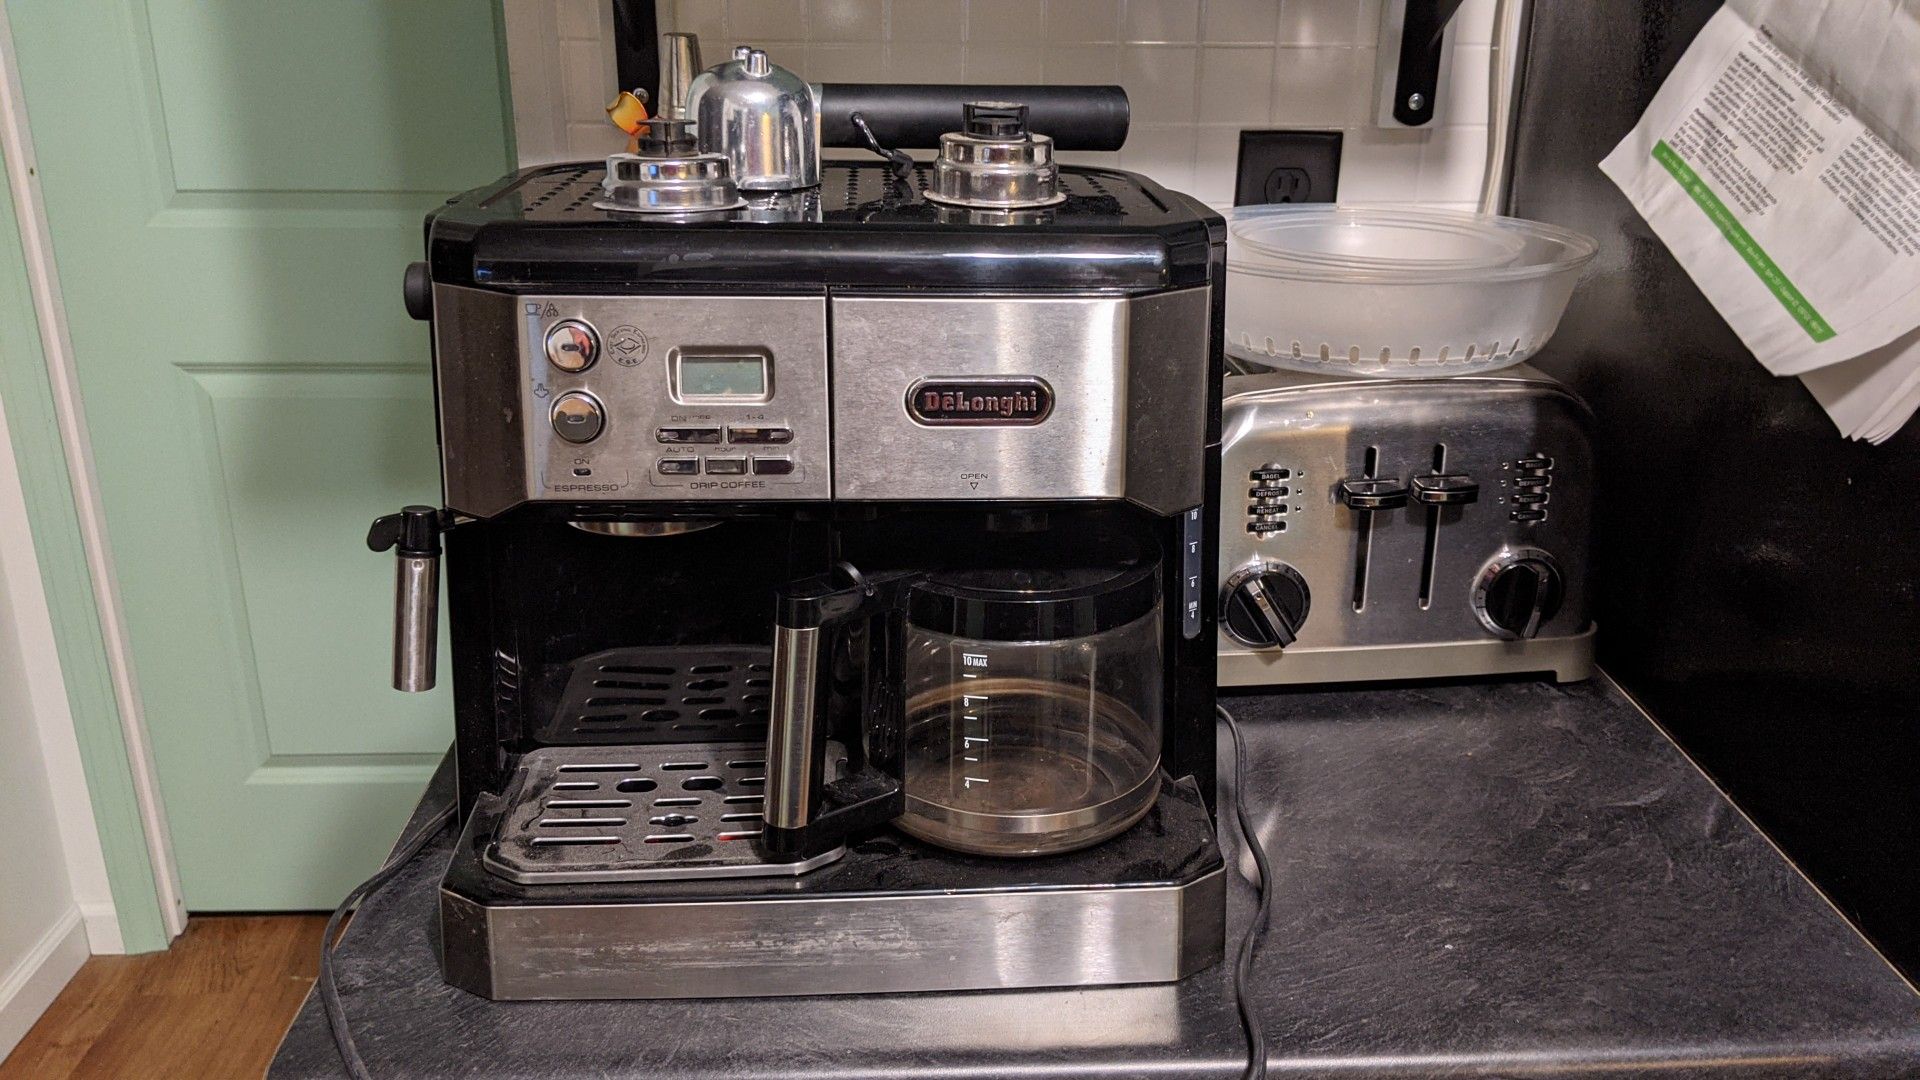 DeLonghi coffee/espresso maker